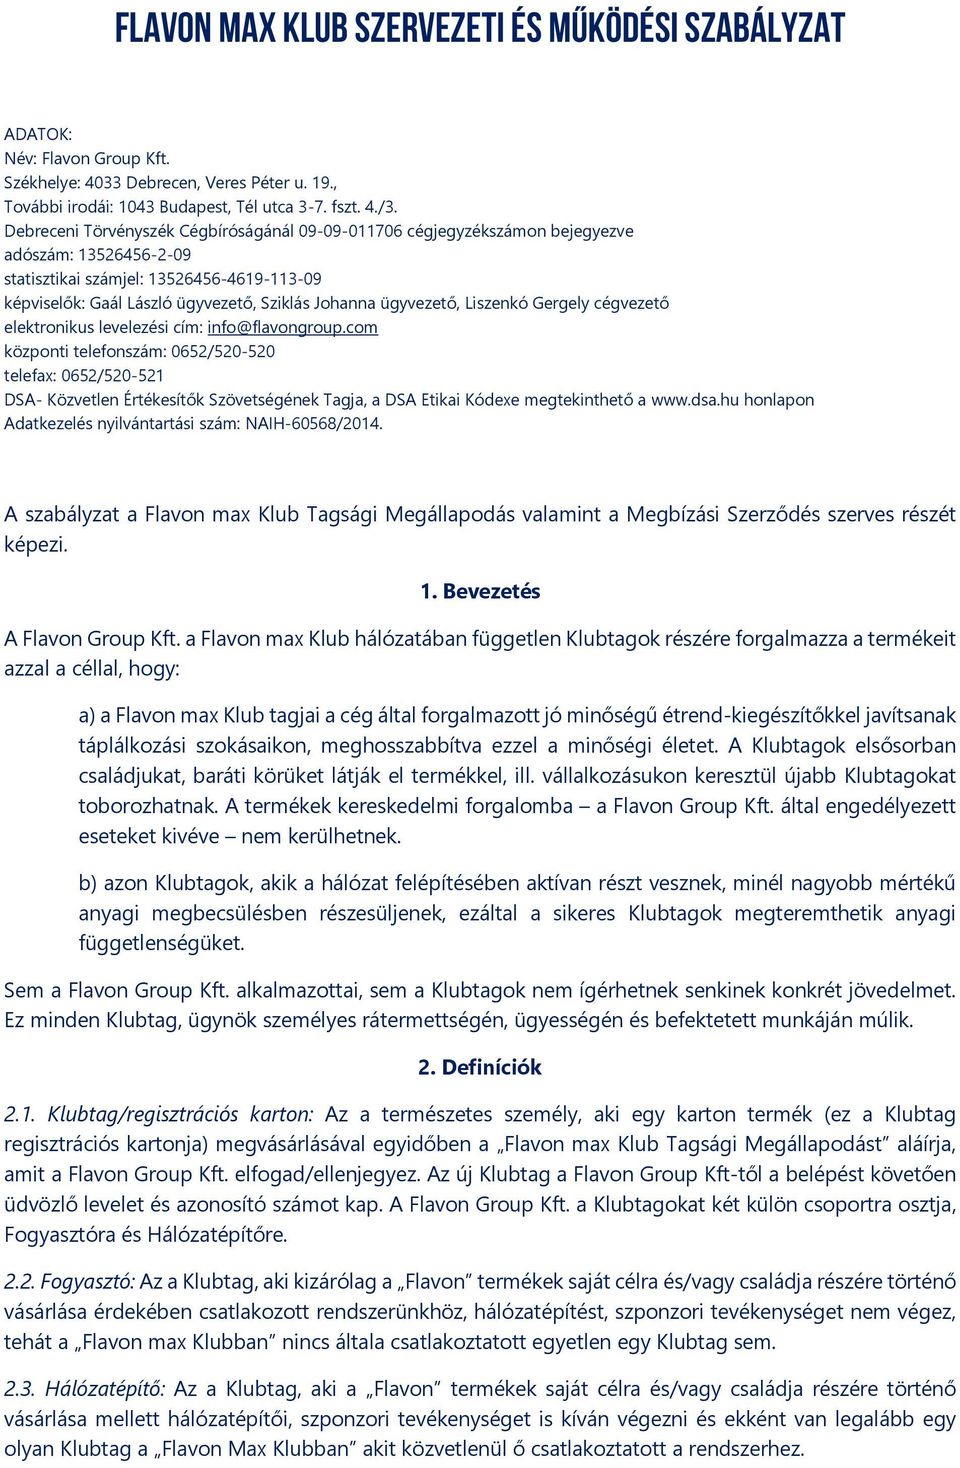 ügyvezető, Liszenkó Gergely cégvezető elektronikus levelezési cím: info@flavongroup.